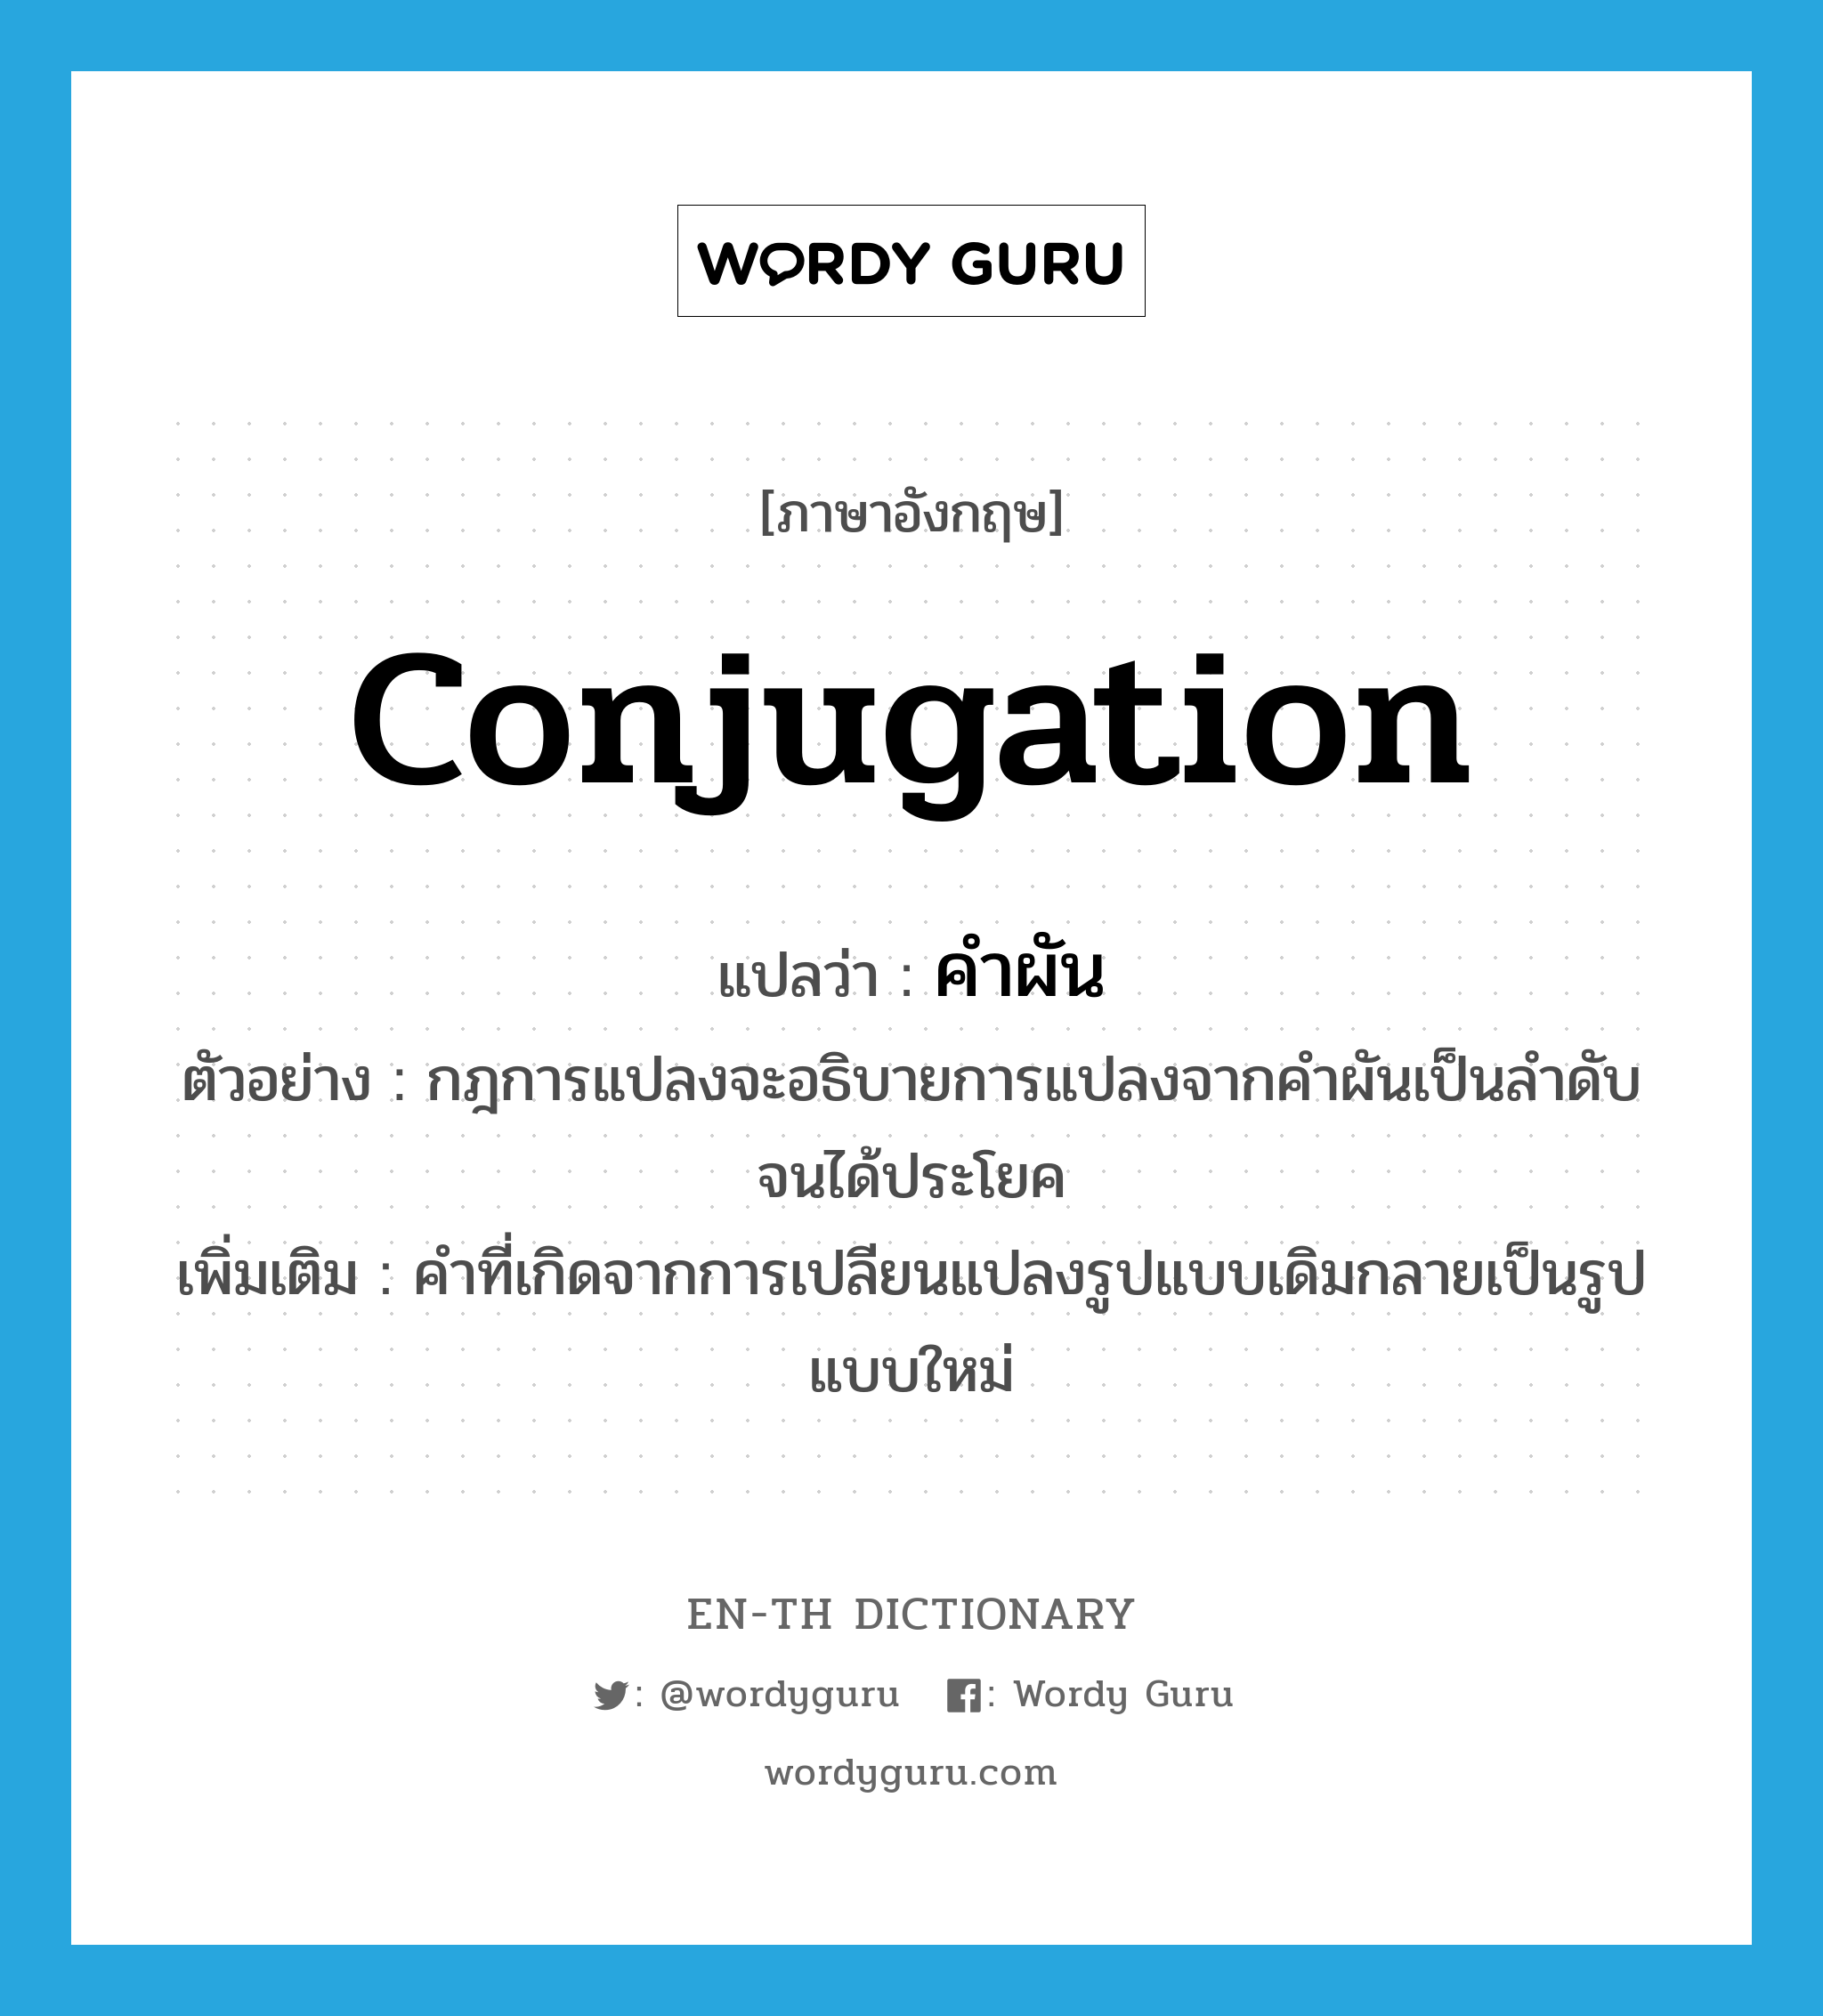 conjugation แปลว่า?, คำศัพท์ภาษาอังกฤษ conjugation แปลว่า คำผัน ประเภท N ตัวอย่าง กฎการแปลงจะอธิบายการแปลงจากคำผันเป็นลำดับจนได้ประโยค เพิ่มเติม คำที่เกิดจากการเปลียนแปลงรูปแบบเดิมกลายเป็นรูปแบบใหม่ หมวด N